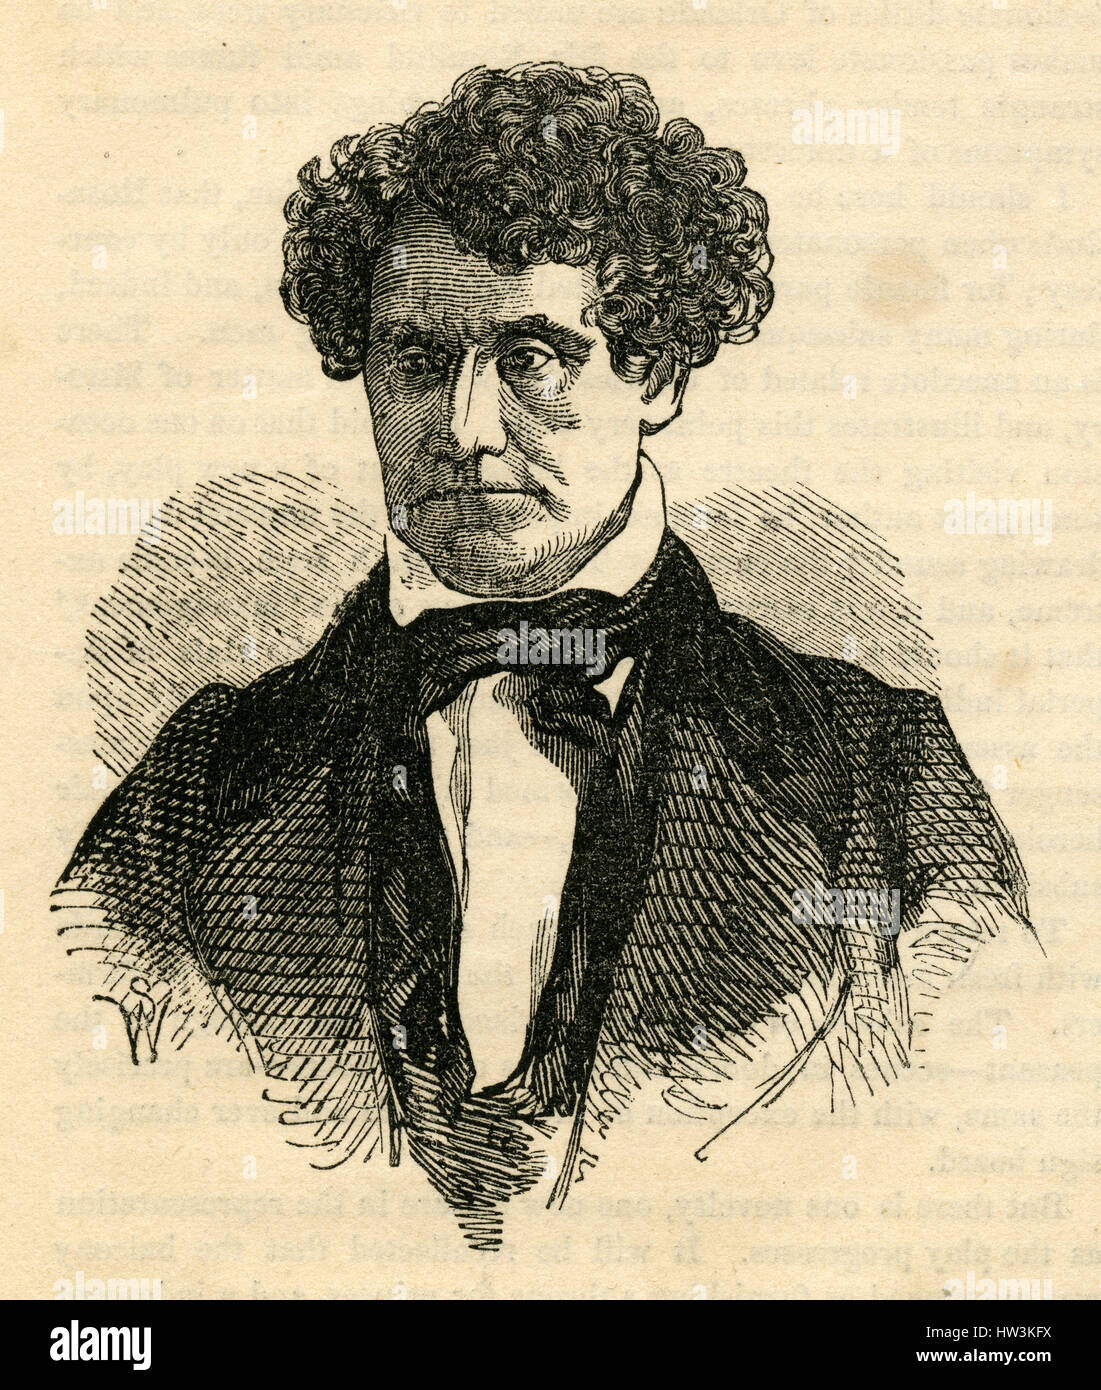 Antiguo grabado de 1854, 'el difunto Thomas S. Hamblin." Thomas Sowerby Hamblin (14 de mayo de 1800 - 8 de enero de 1853) fue un actor y director de teatro en inglés. Fuente: grabado original. Foto de stock